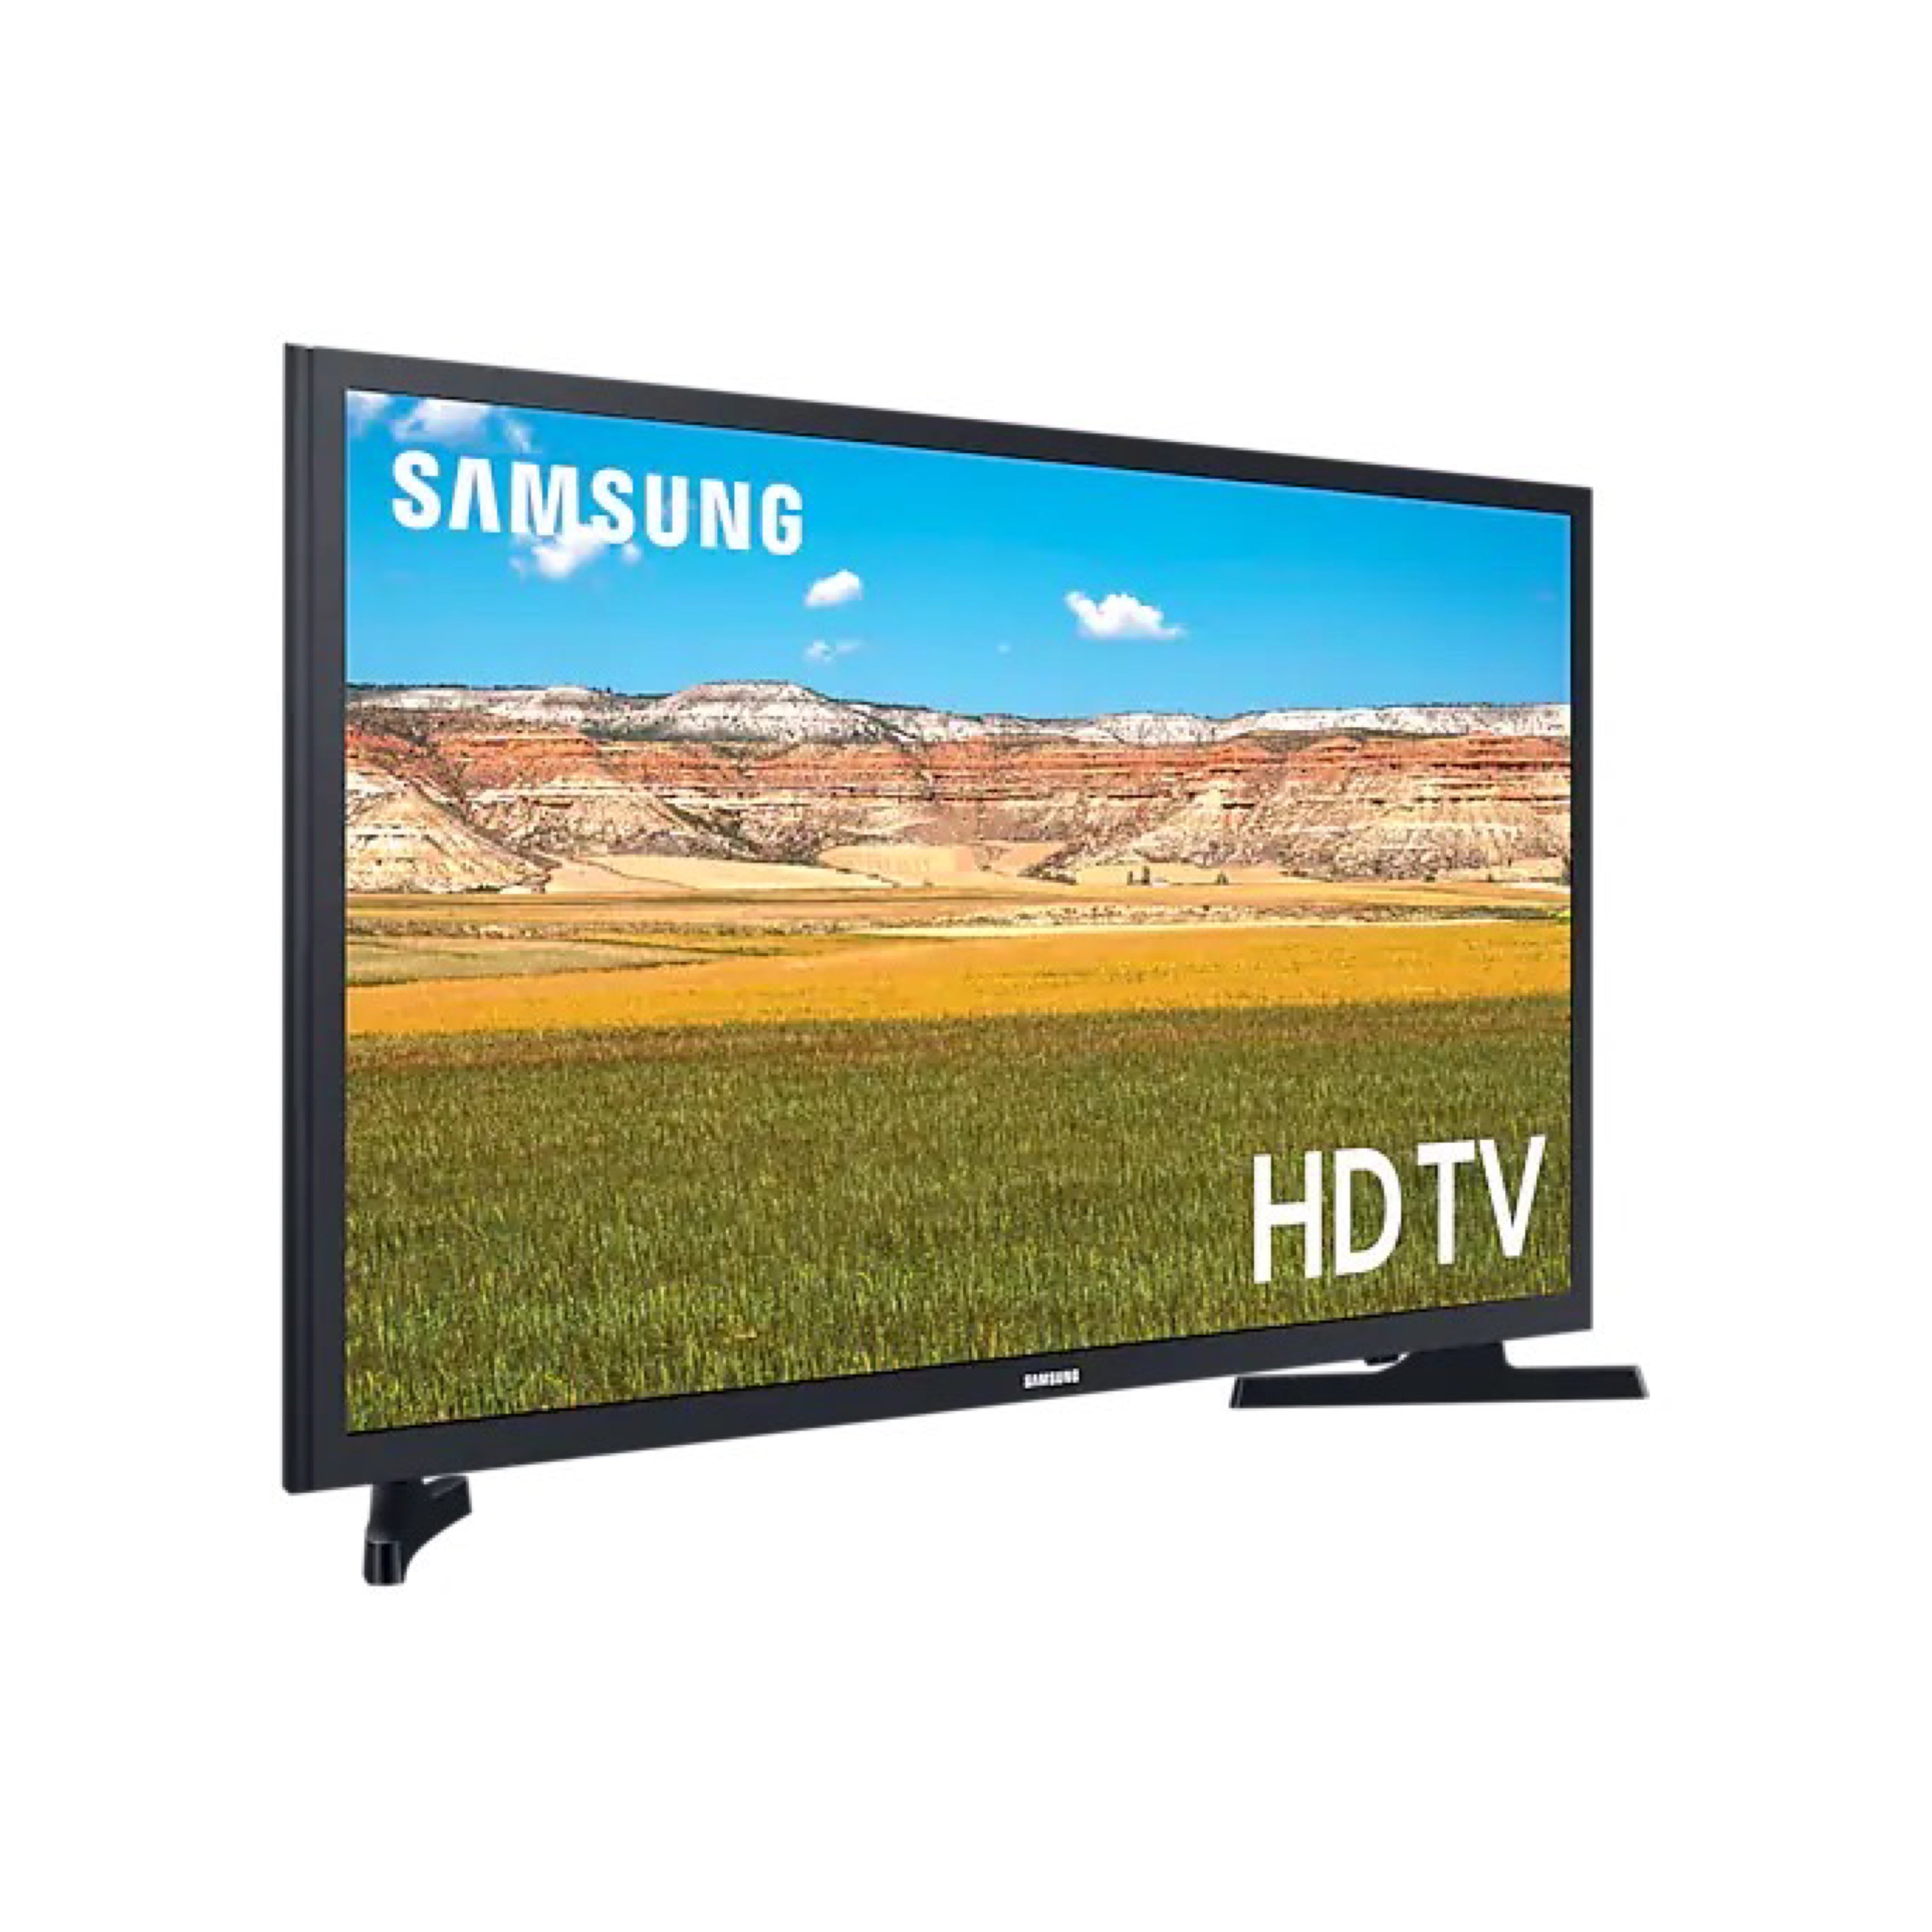 Samsung HD Smart LED TV T5300